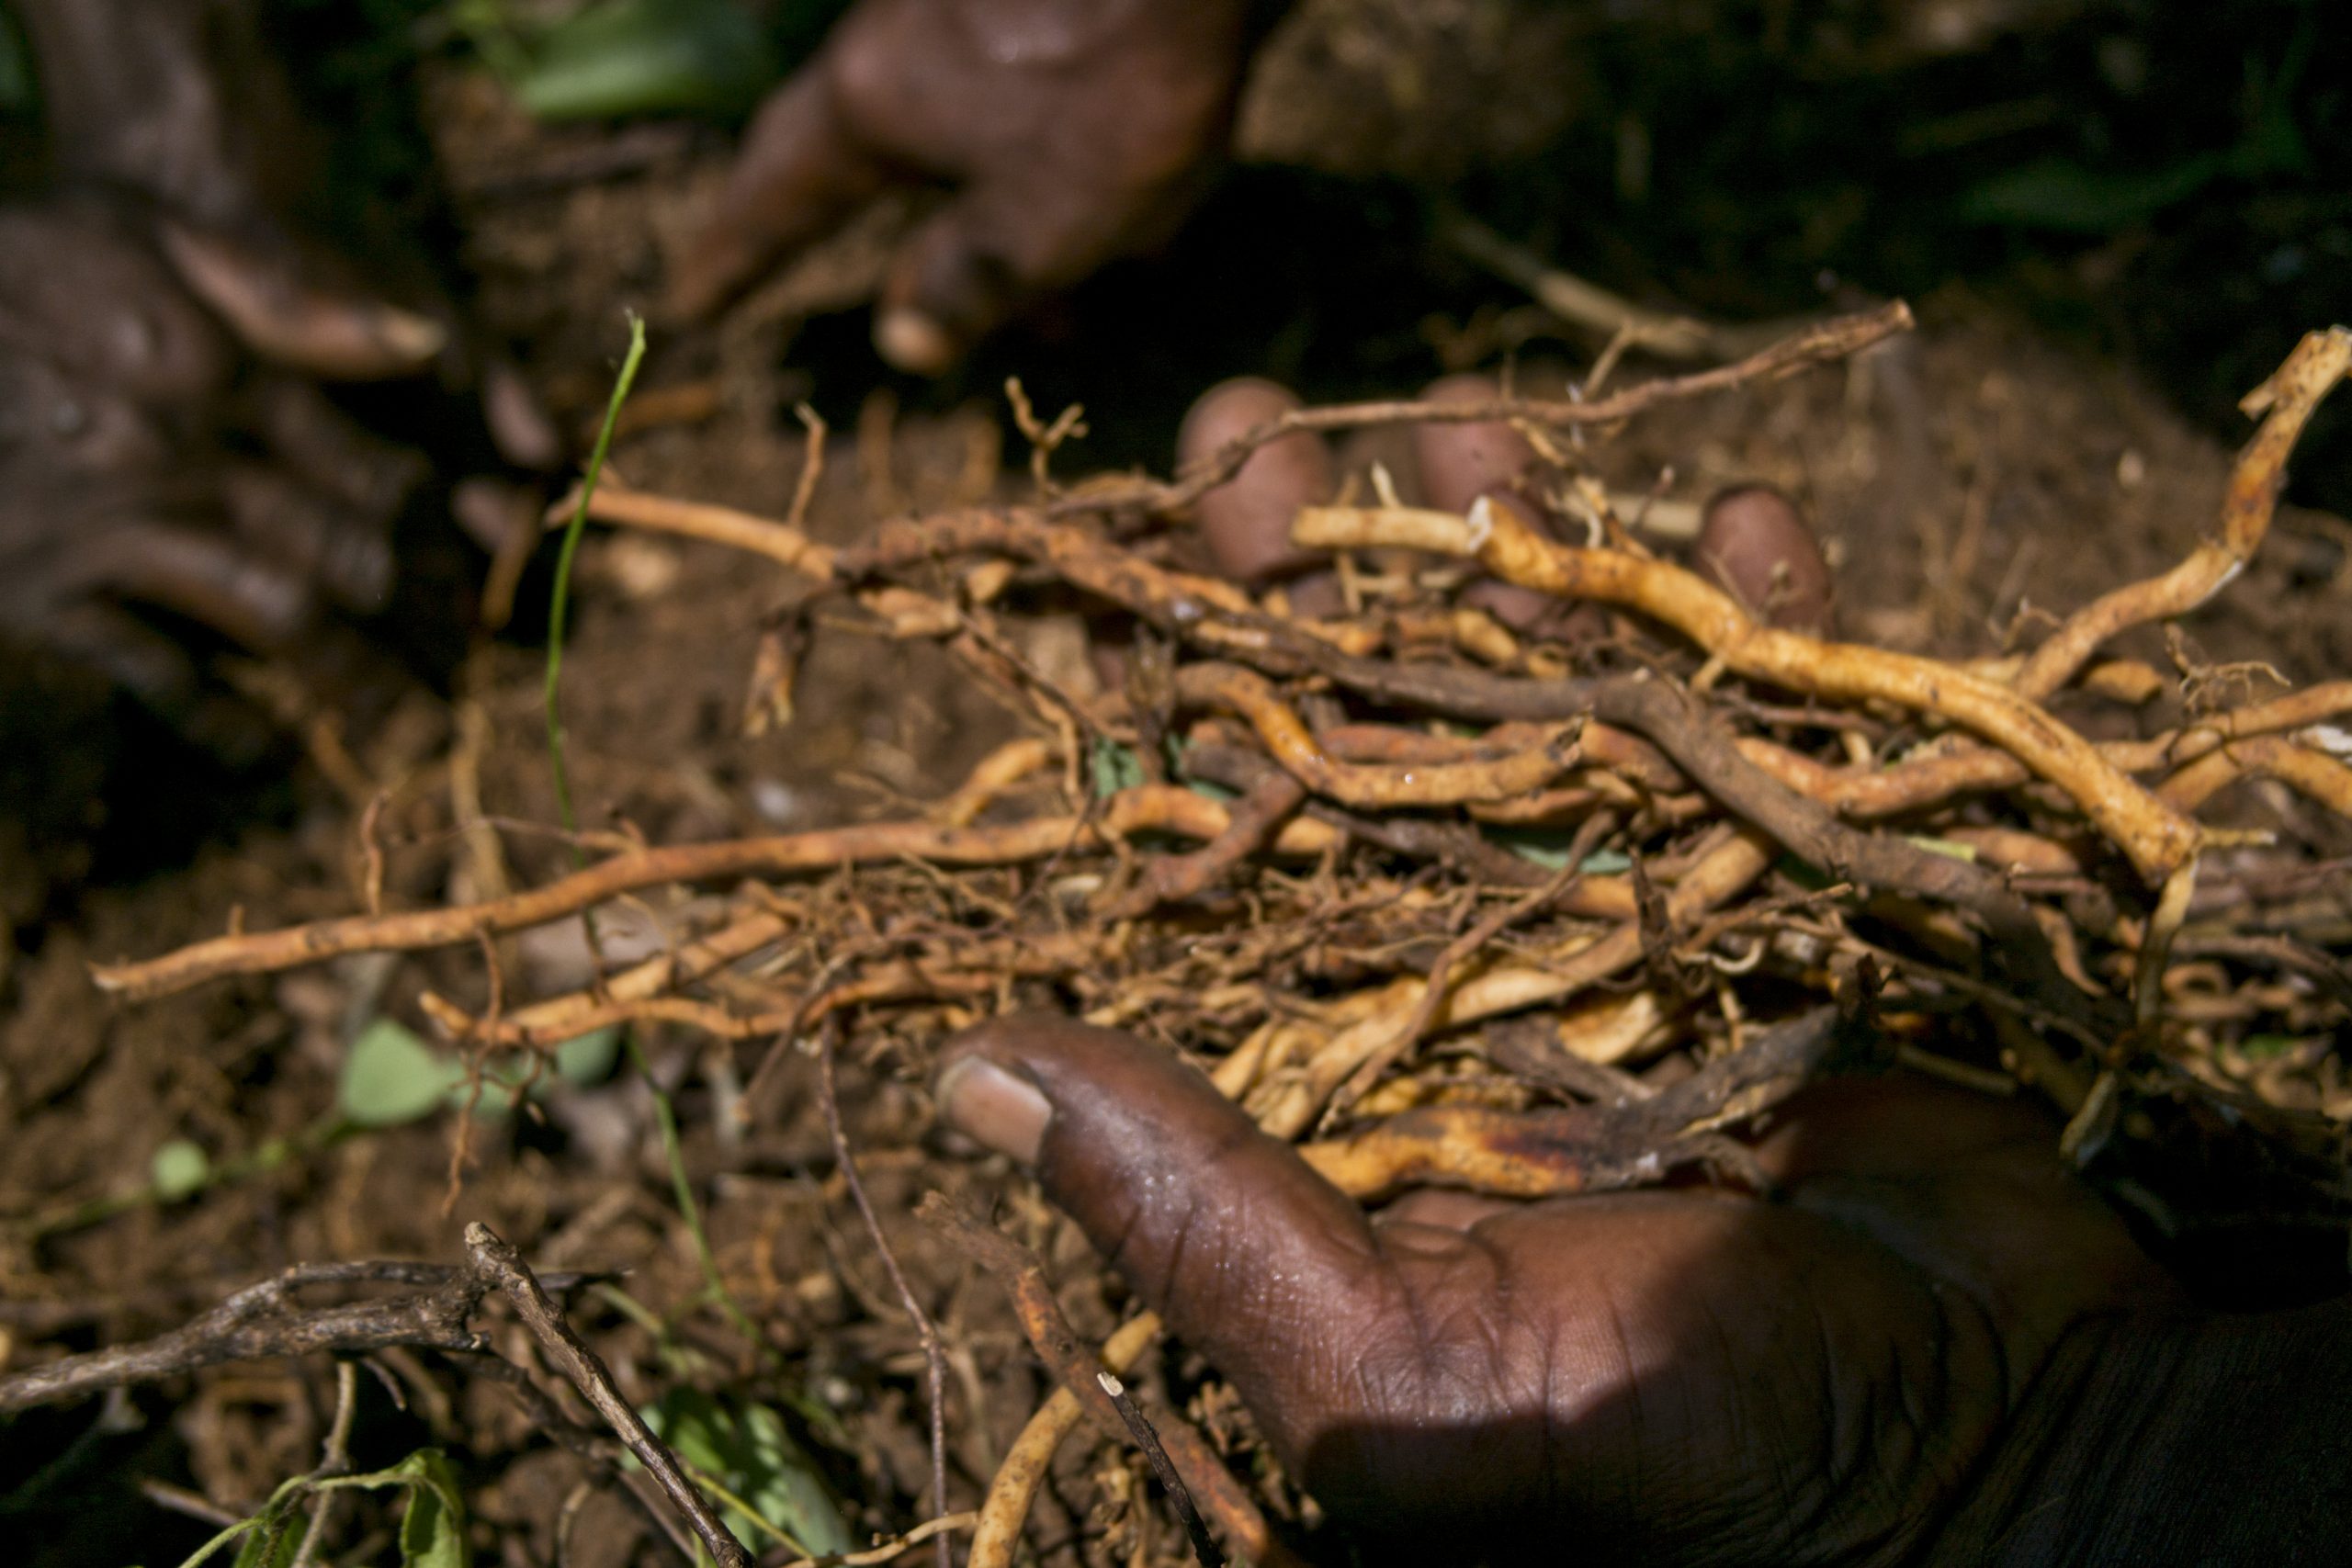 Jamaican Sarsaparilla Root